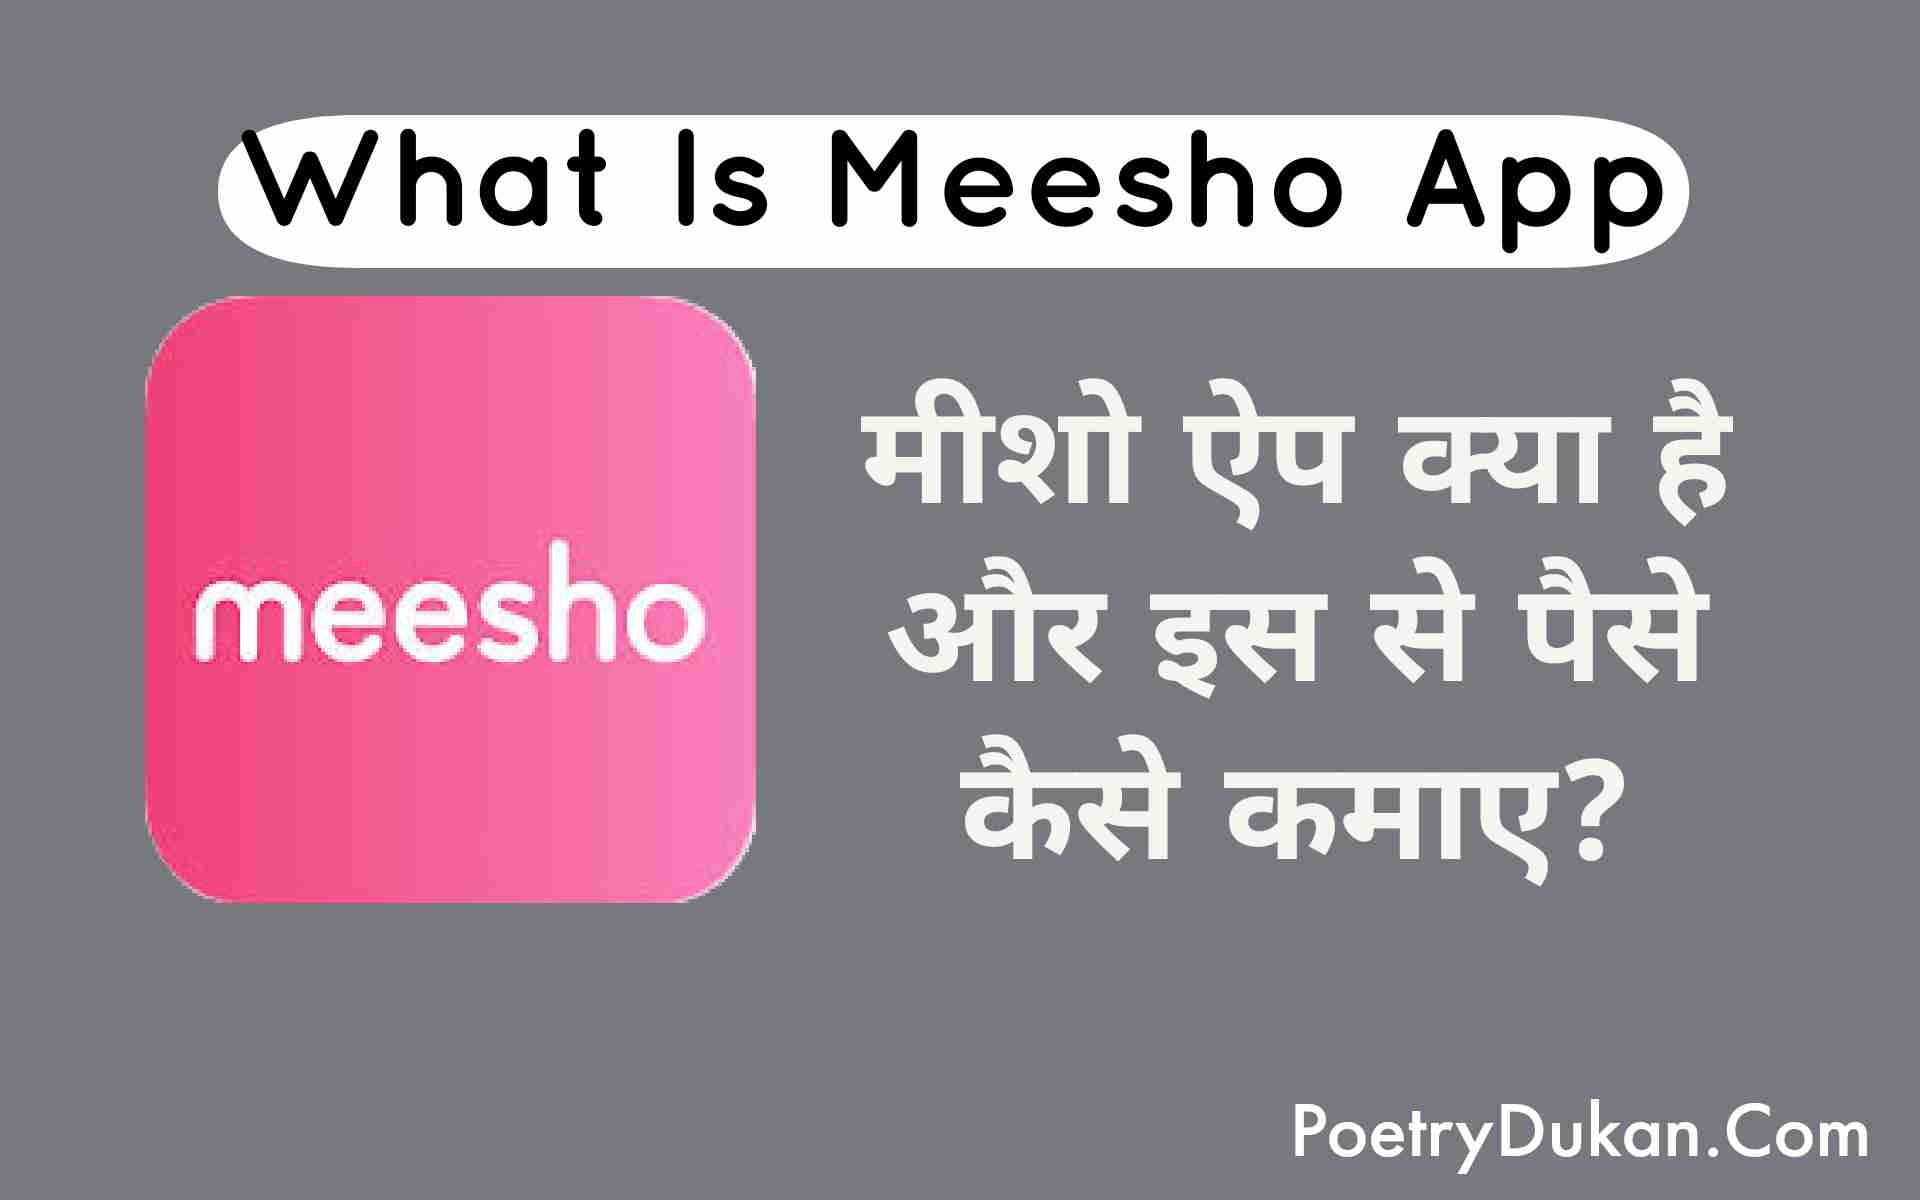 मीशो ऐप क्या है ? meesho app se paise kaise kamaye | Meesho App Kya hai In Hindi मीशो ऐप से पैसे कैसे कमाए 2023